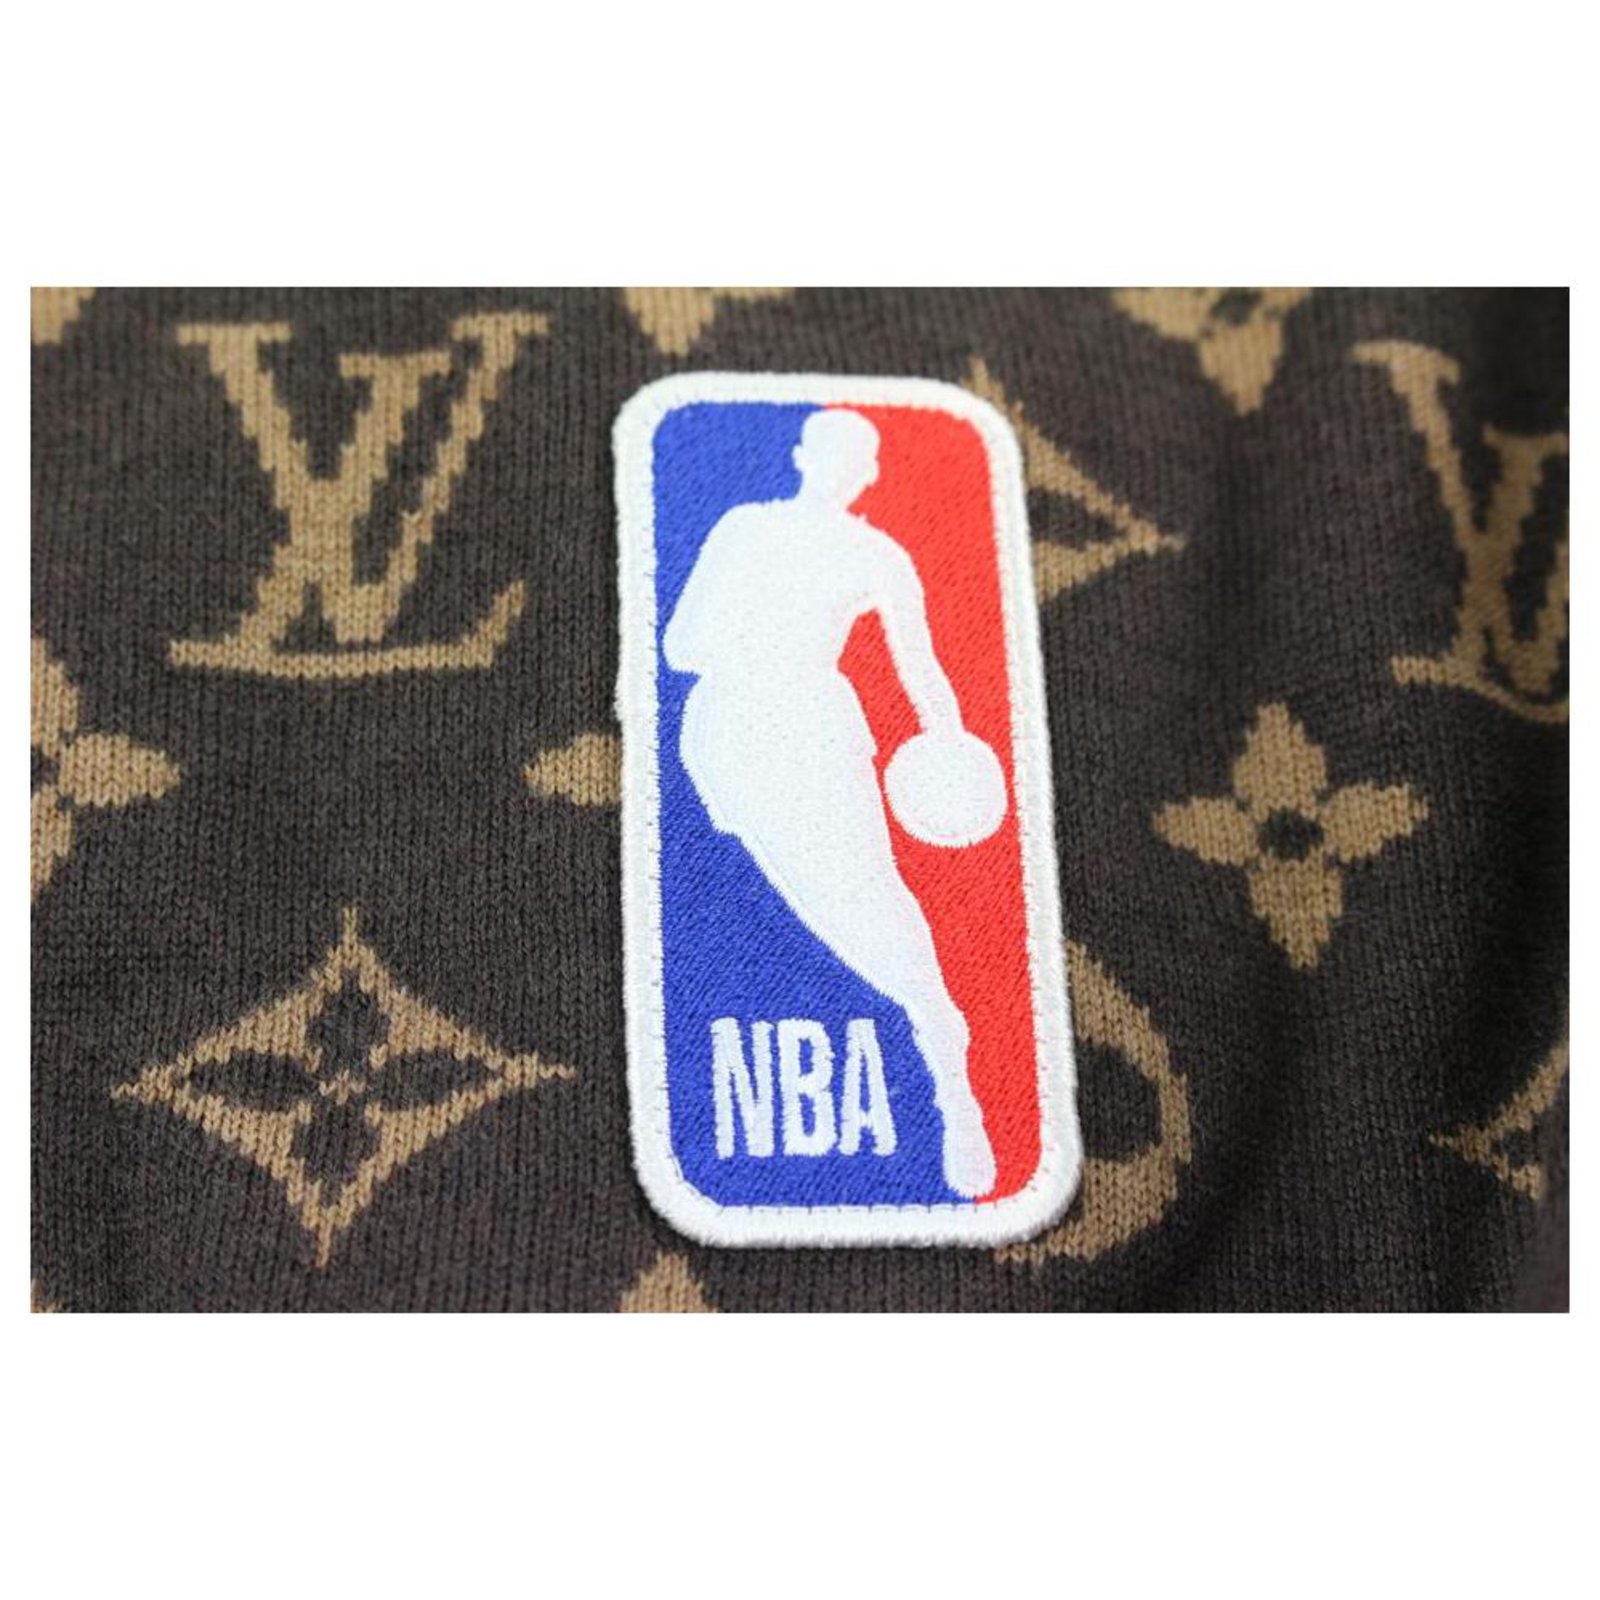 Louis Vuitton XL NBA maschile 2 Giacca in maglione con cerniera e